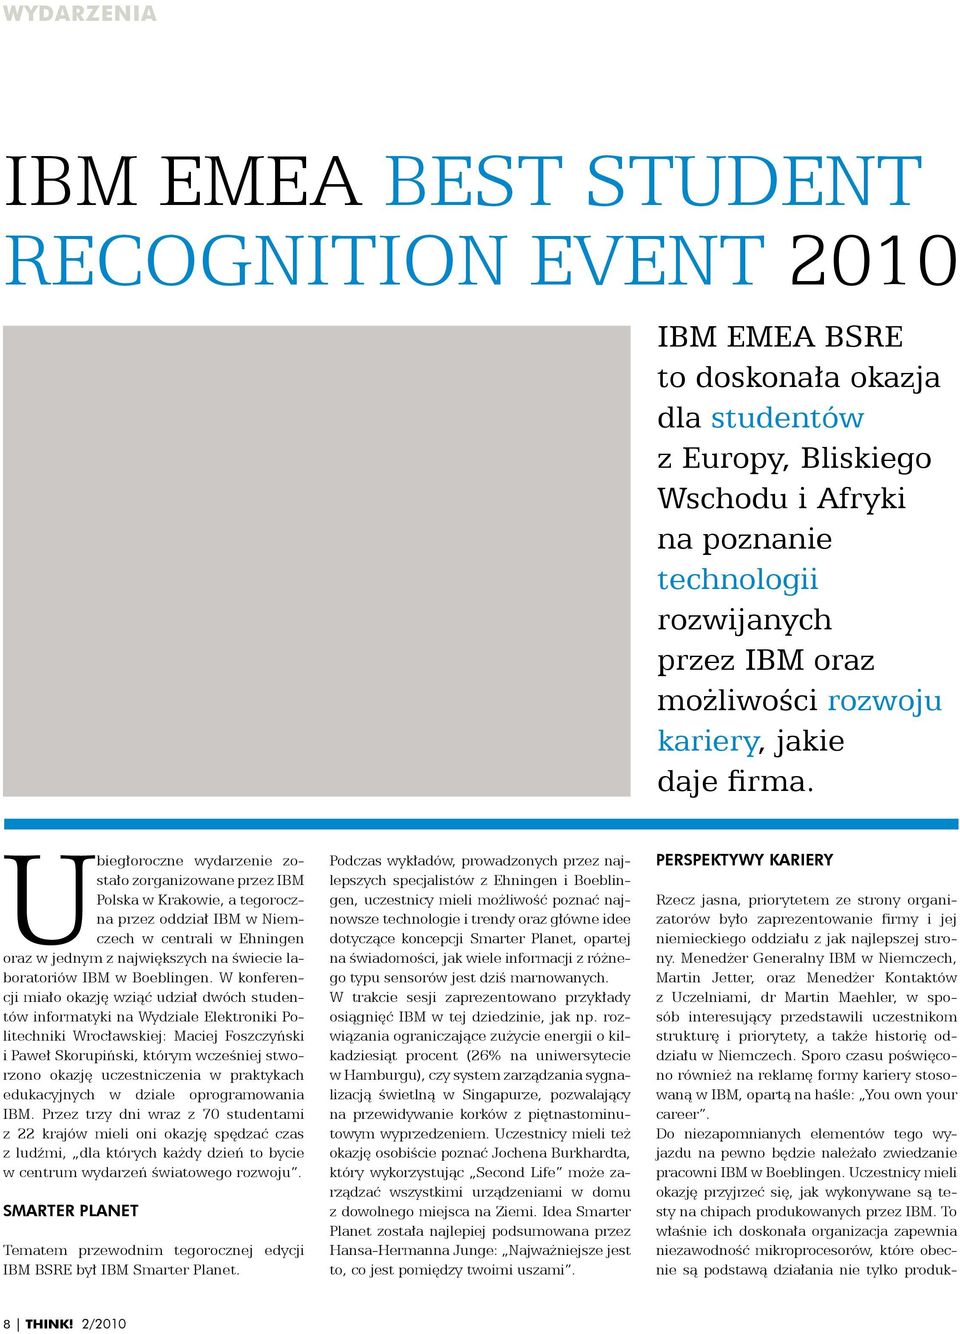 Ubiegłoroczne wydarzenie zostało zorganizowane przez IBM Polska w Krakowie, a tegoroczna przez oddział IBM w Niemczech w centrali w Ehningen oraz w jednym z największych na świecie laboratoriów IBM w